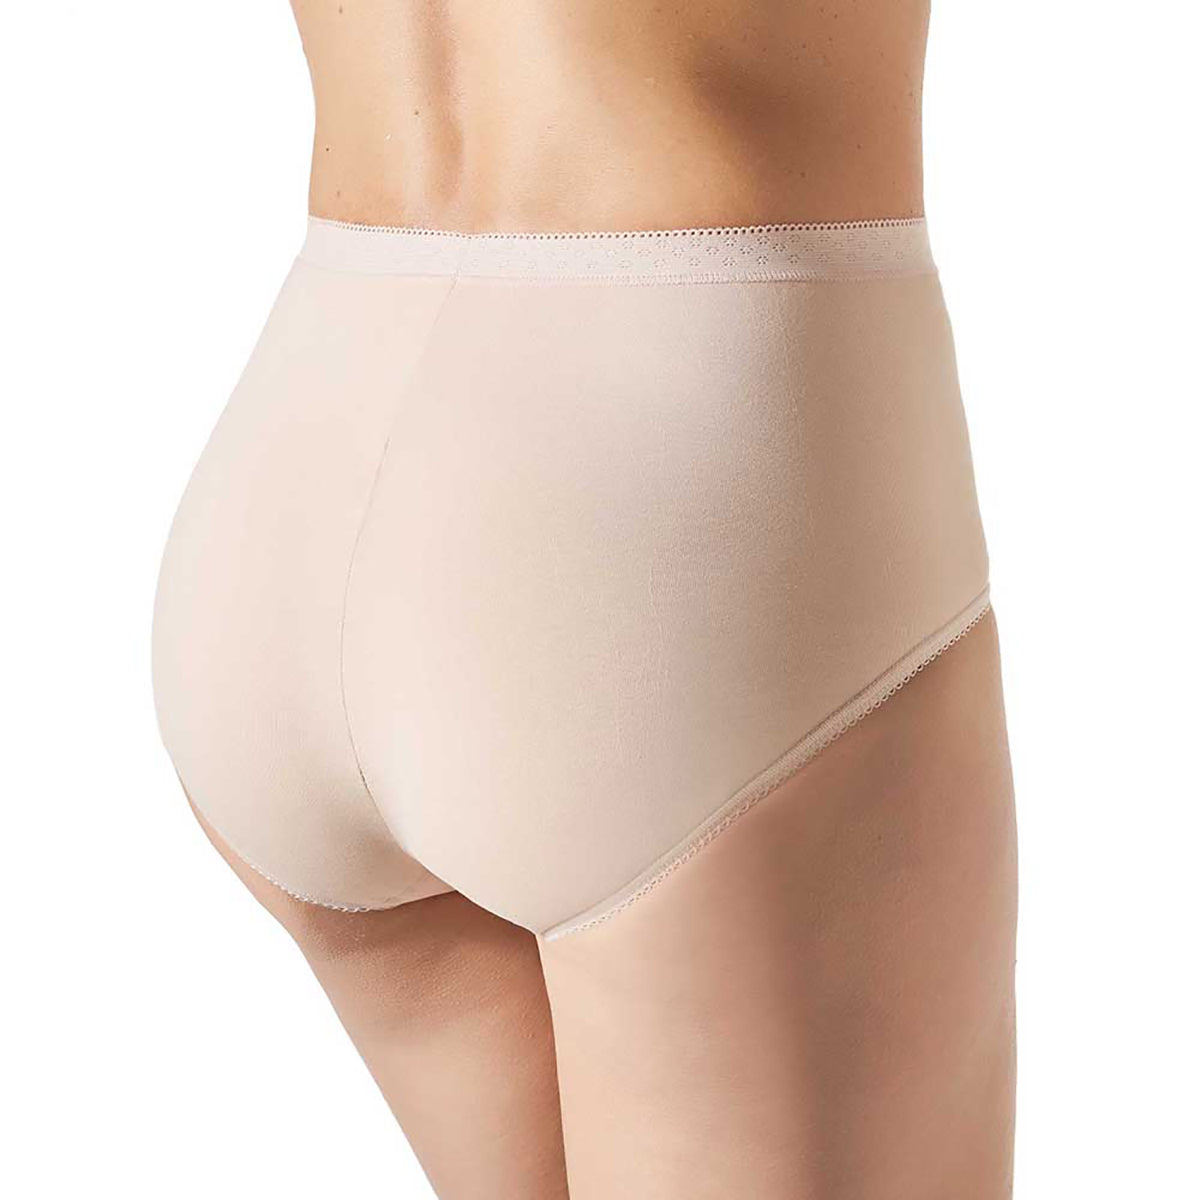 High-waist compression briefs - Classic Briefs - Underwear